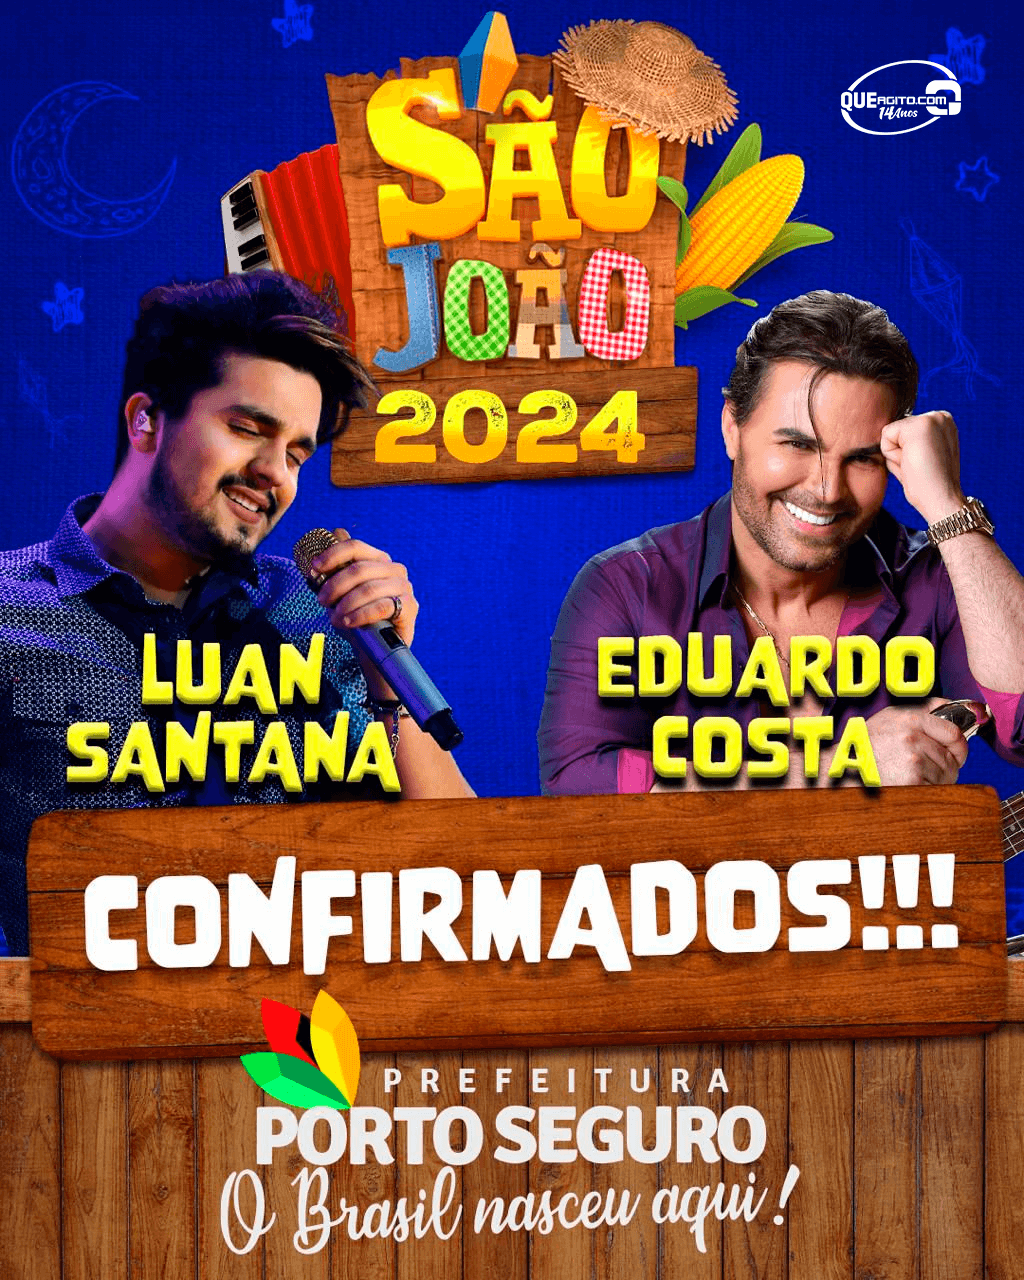 Luan Santana e Eduardo Costa são as primeiras atrações confirmadas no São João de Porto Seguro! 2